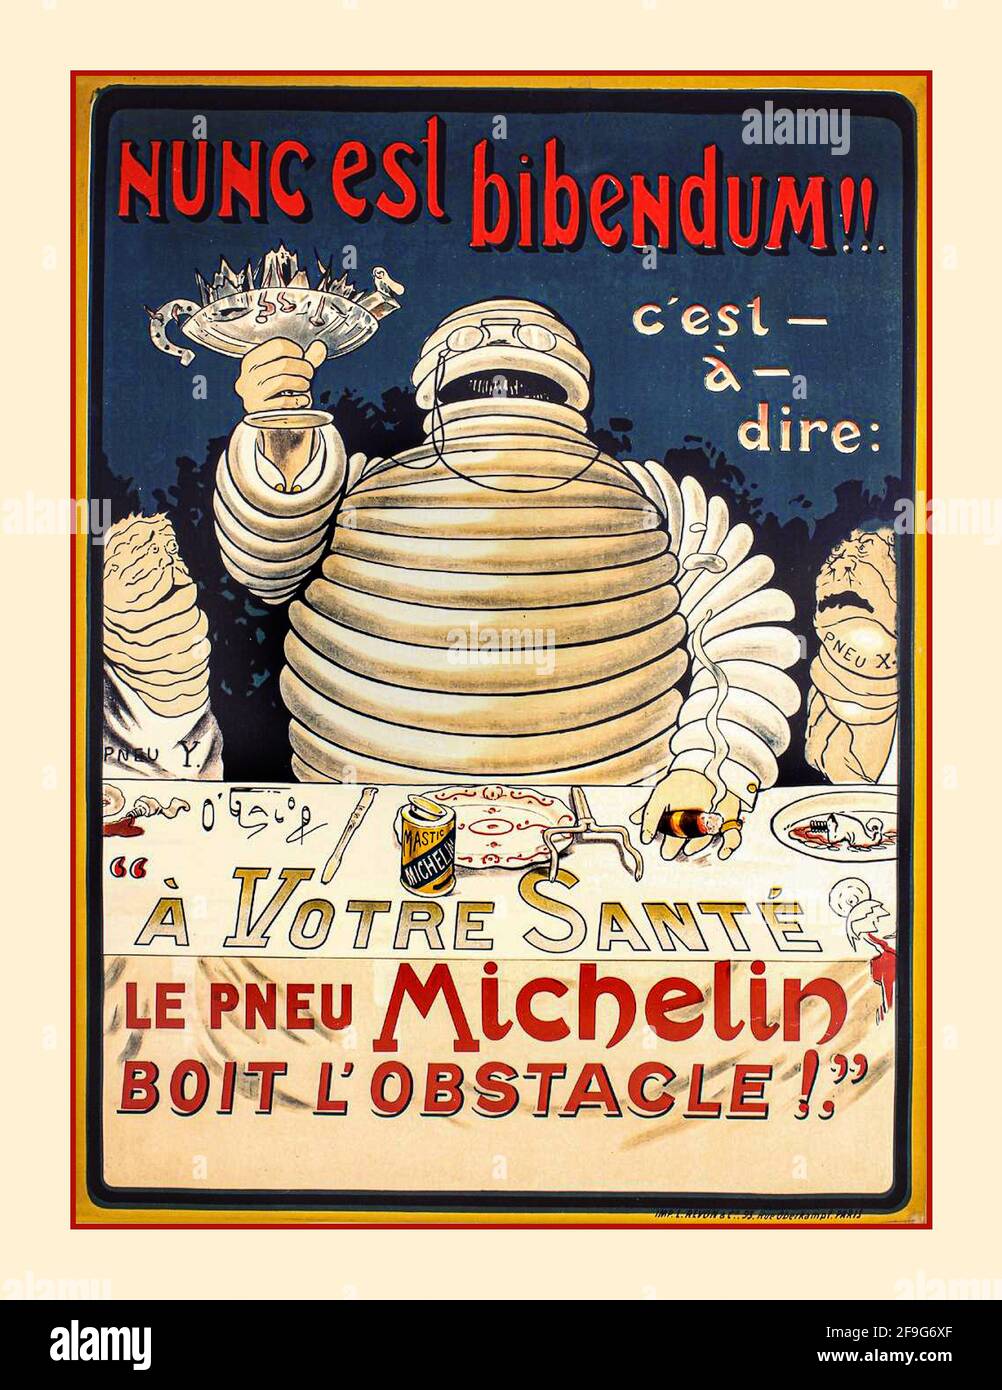 BIBENDUM MICHELIN 1900's Michelin Anuncio Neumáticos para neumáticos de automóviles Con el hombre Bibendum un icono utilizado en la publicidad de los primeros carteles Michelin Foto de stock